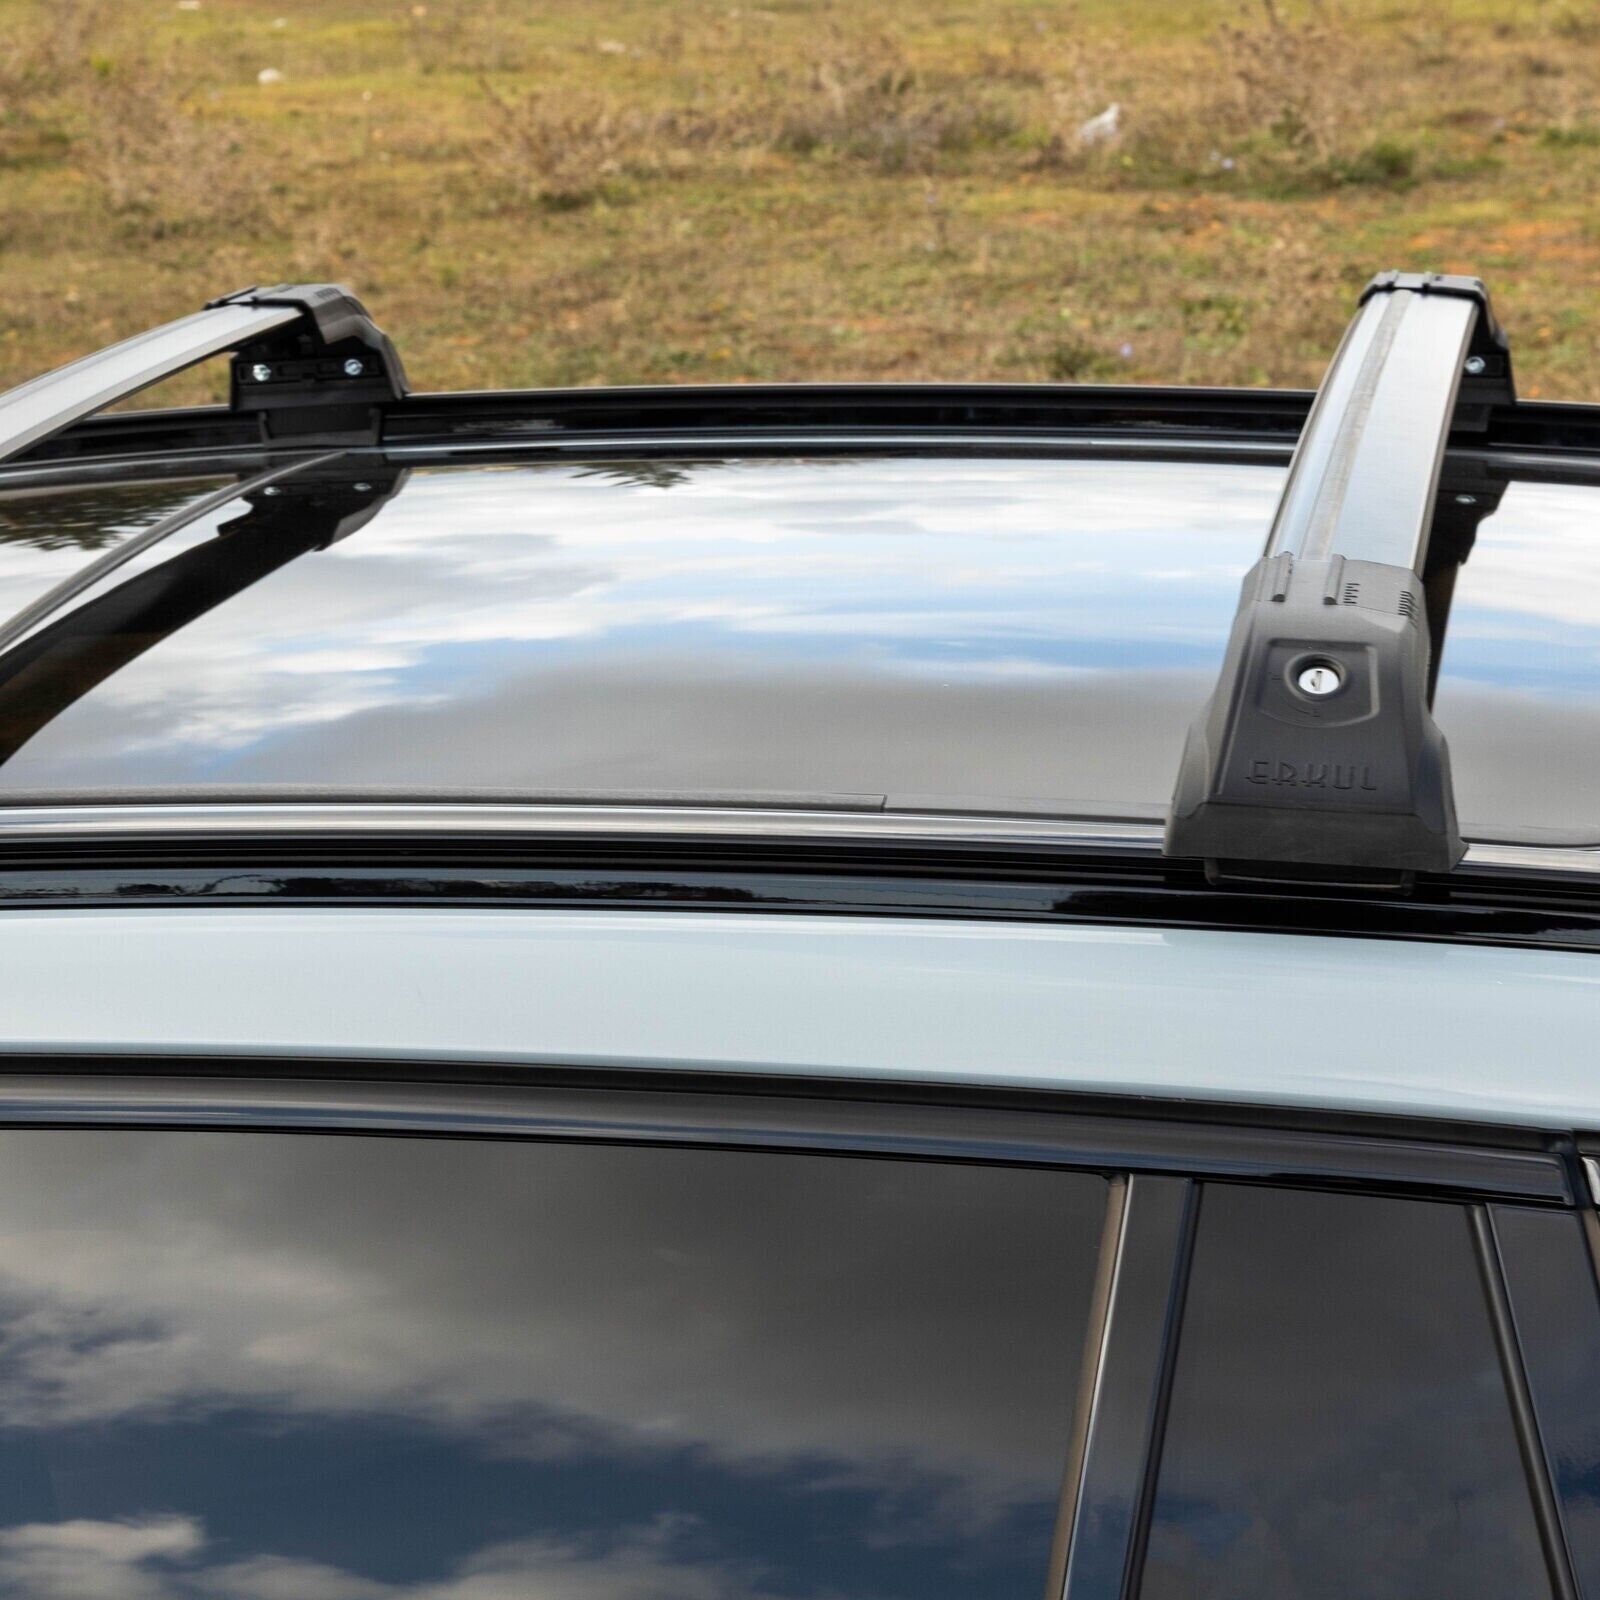 Barres de Toit BMW X1 2022 AUJOURD'HUI DESIGN1 TRANSVERSALES ALUMINIUM  barre de toit intégrés